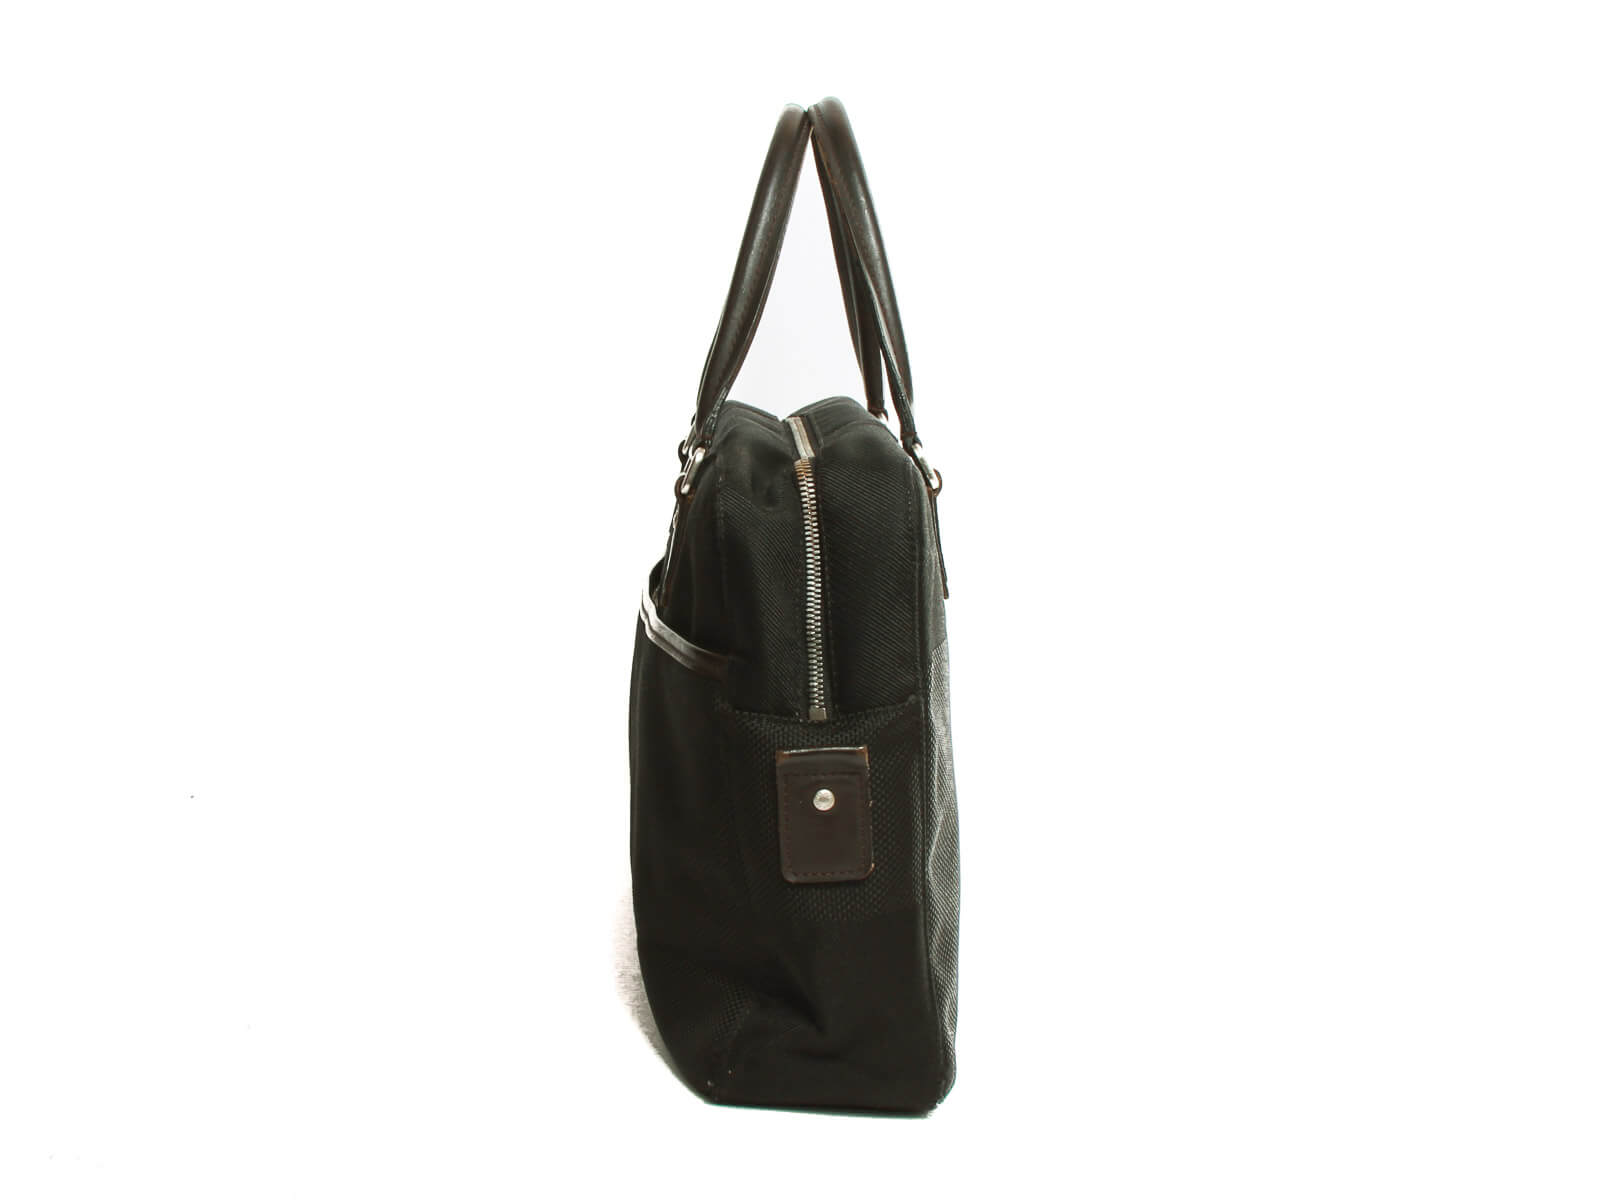 Sold at Auction: Louis Vuitton Damier Geant Business Bag